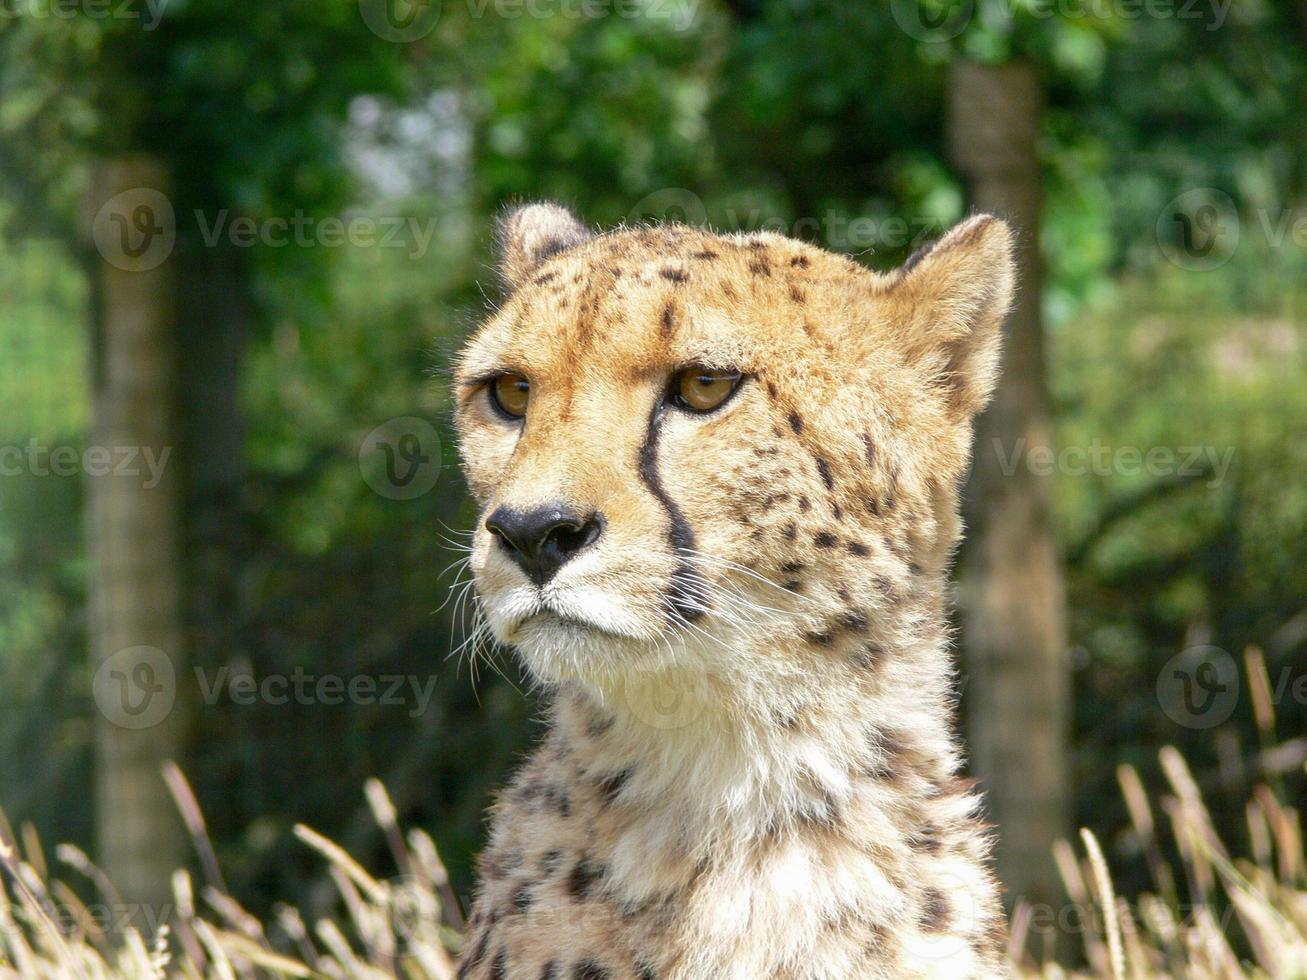 Cheetah in a zoo environment photo